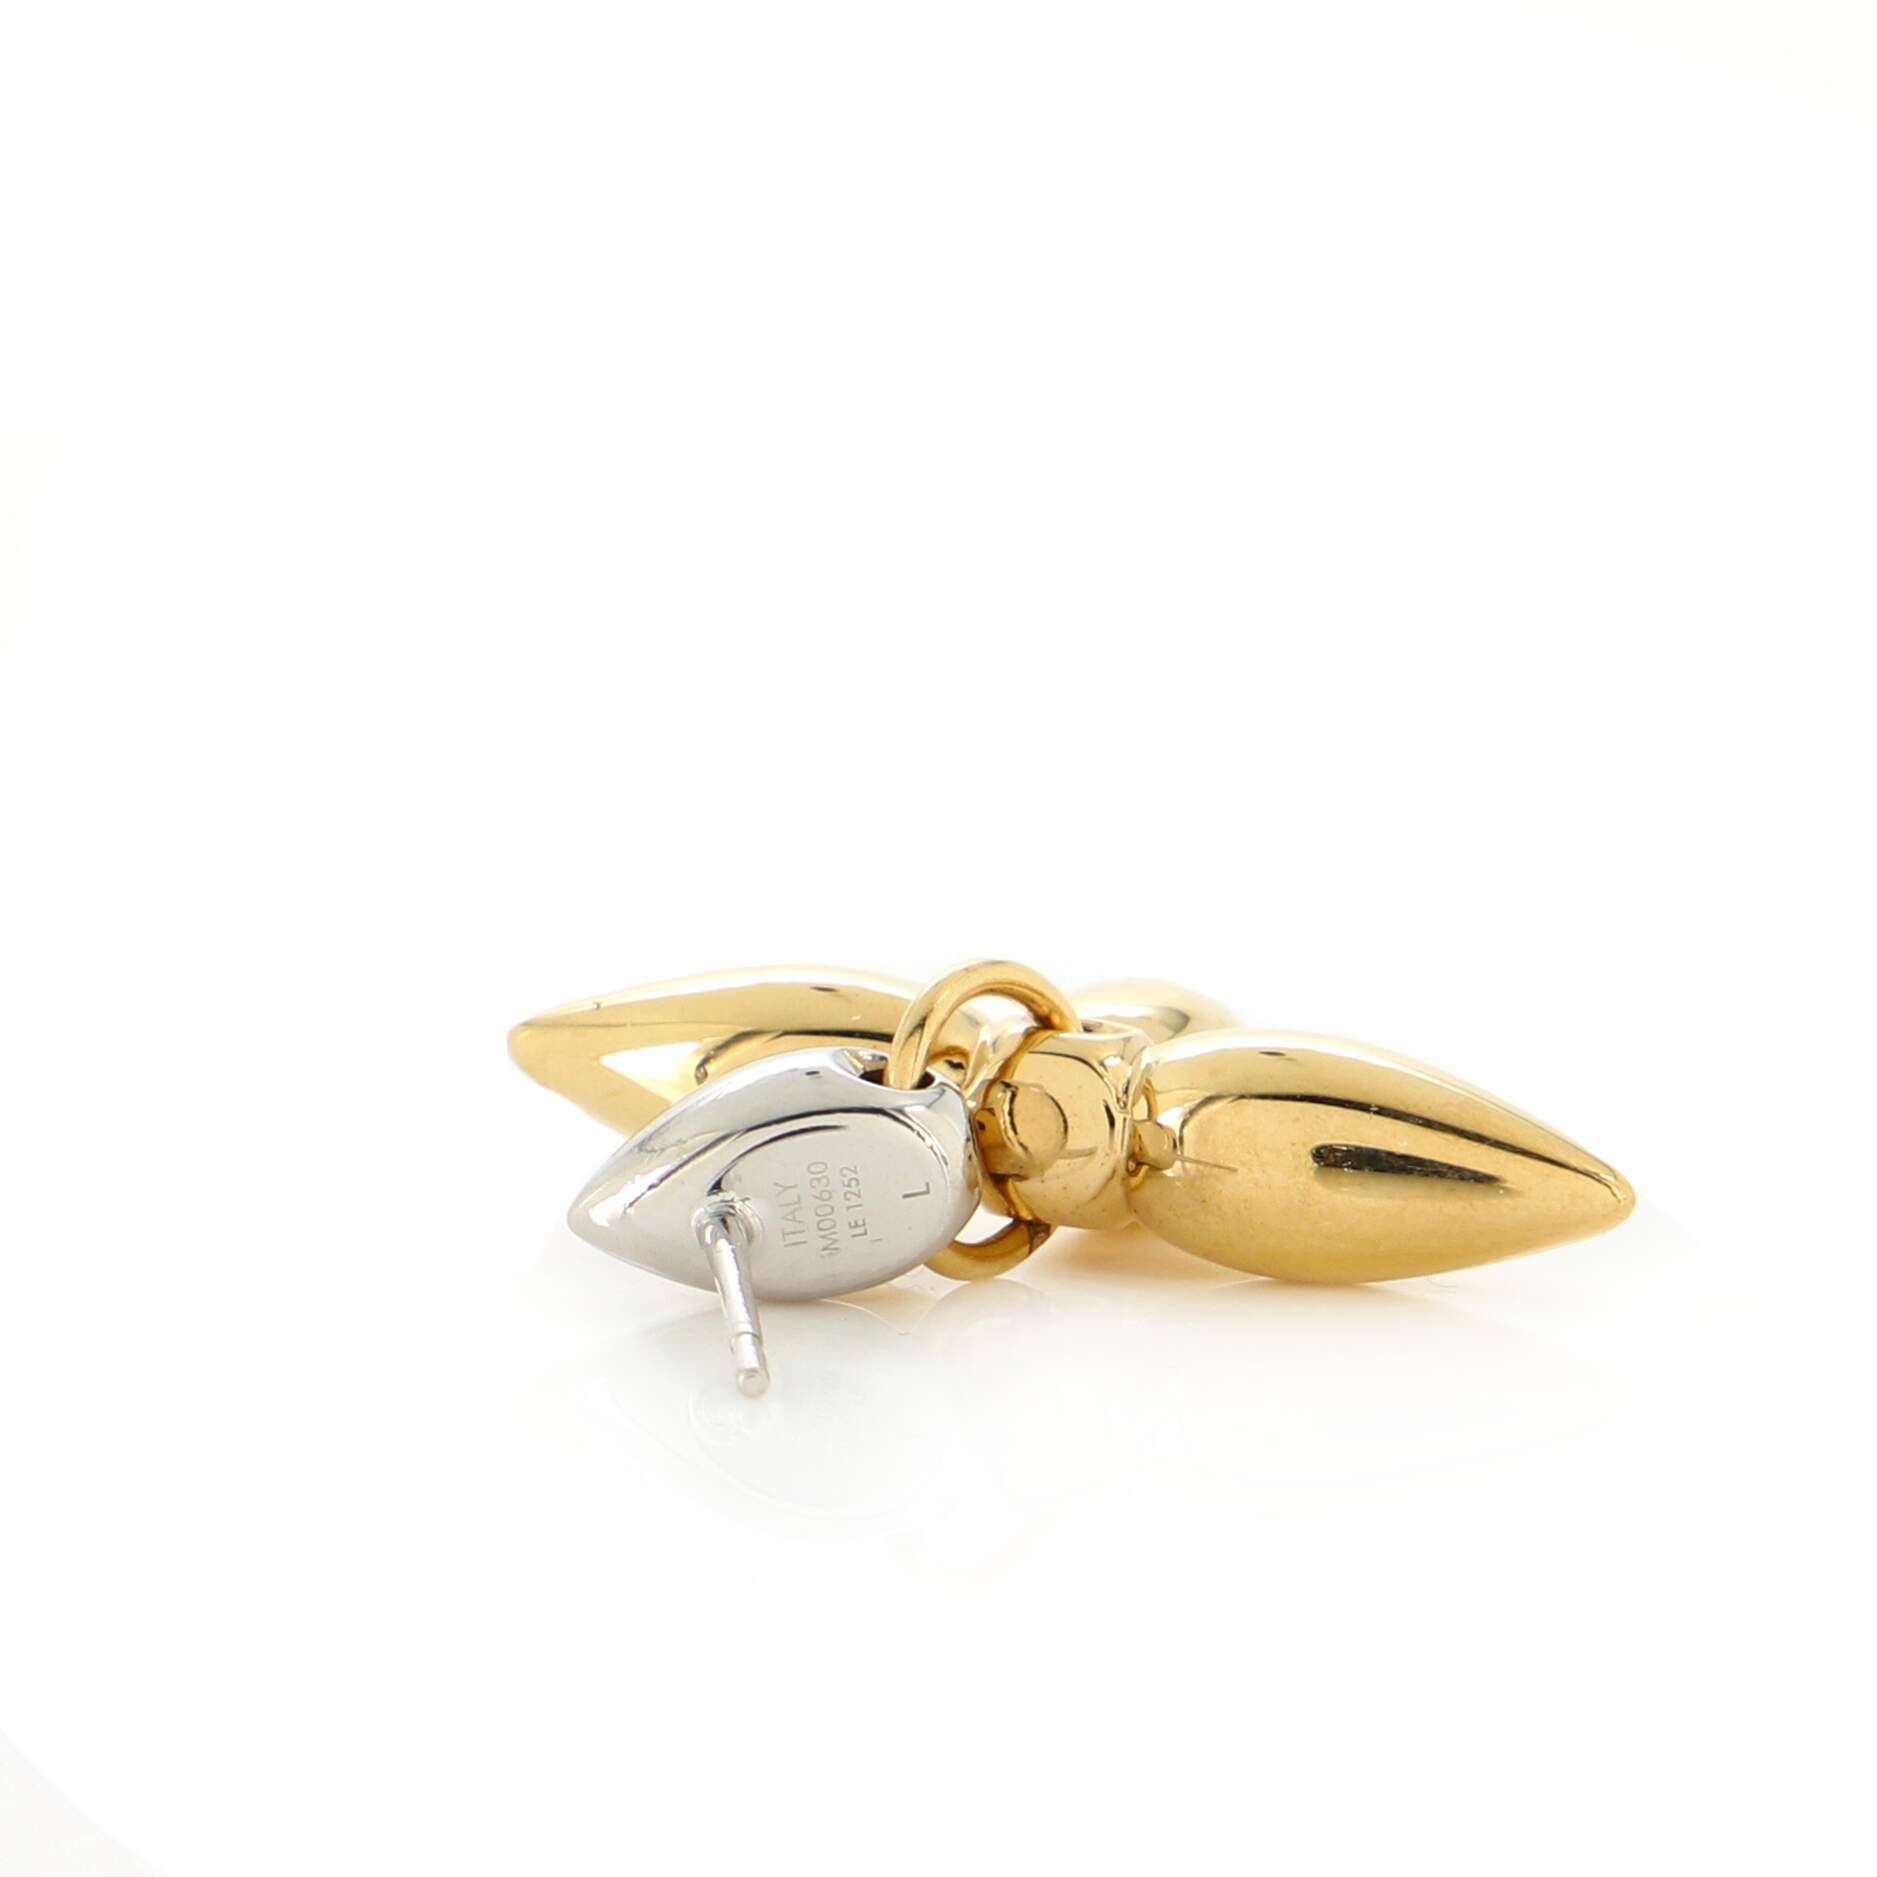 Louis Vuitton Louisette Stud Earrings, Gold